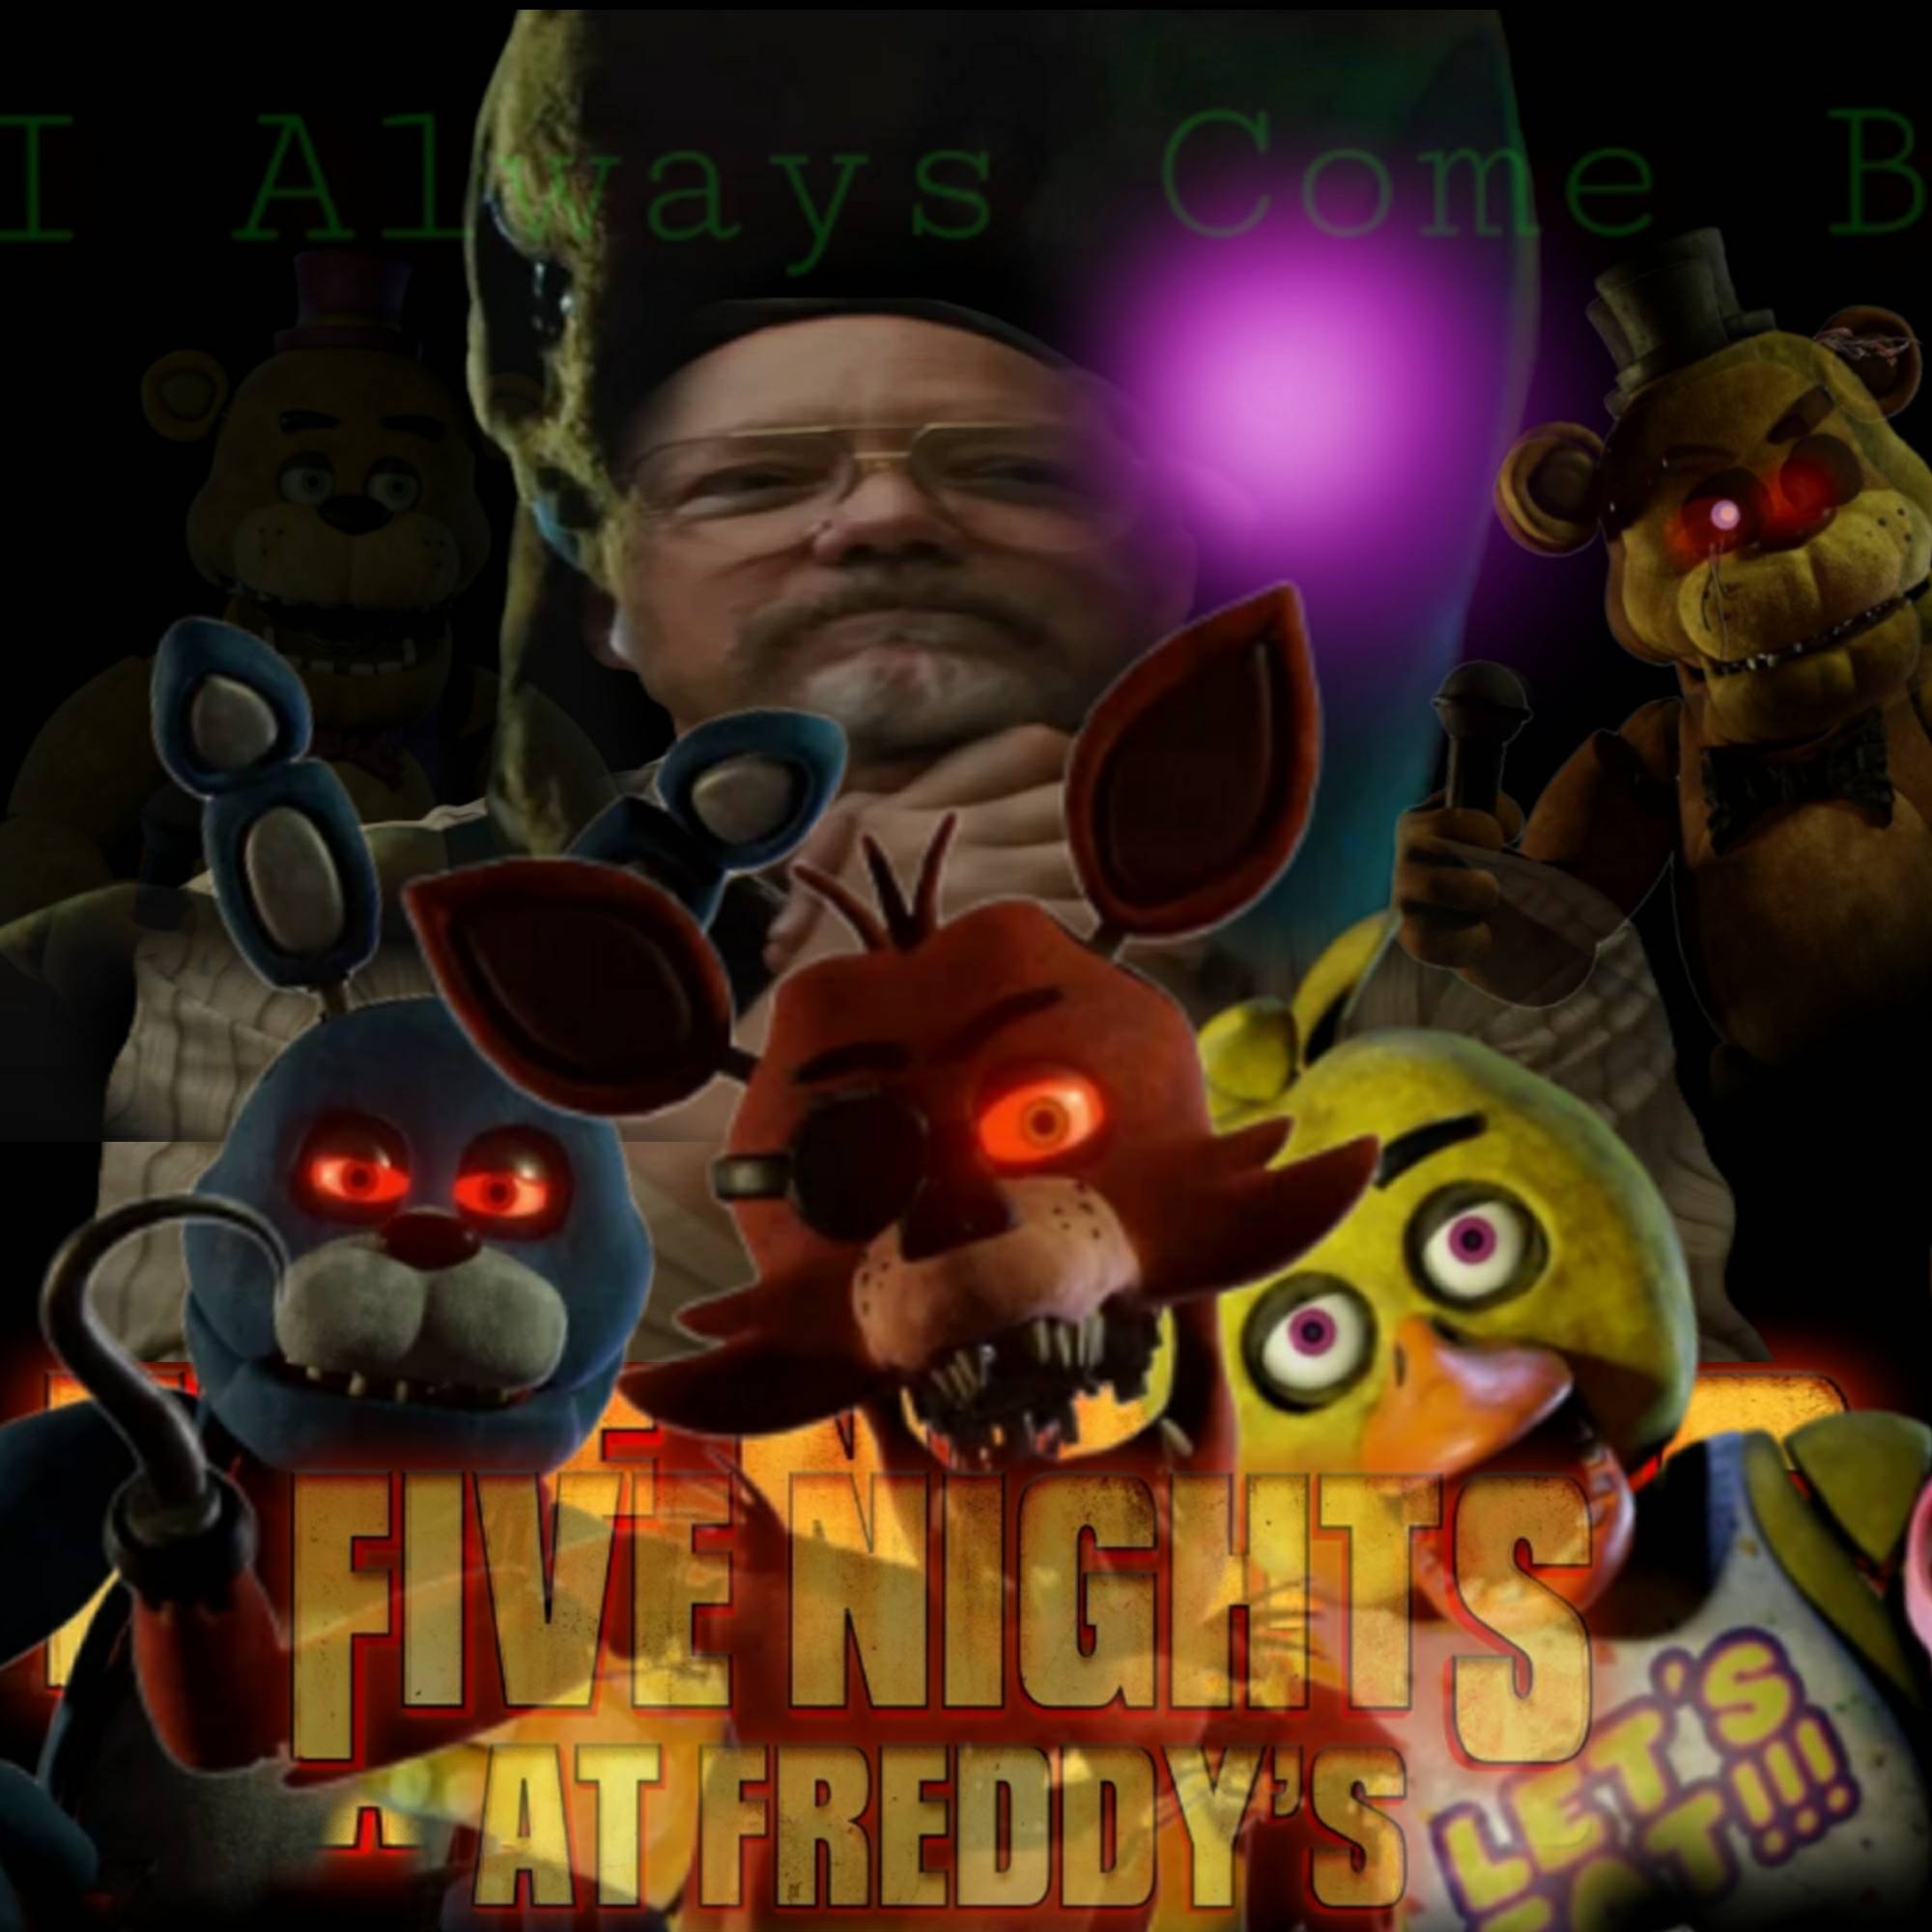 Fnaf movie) shadow freddy poster (edit) by galaxystudios78 on